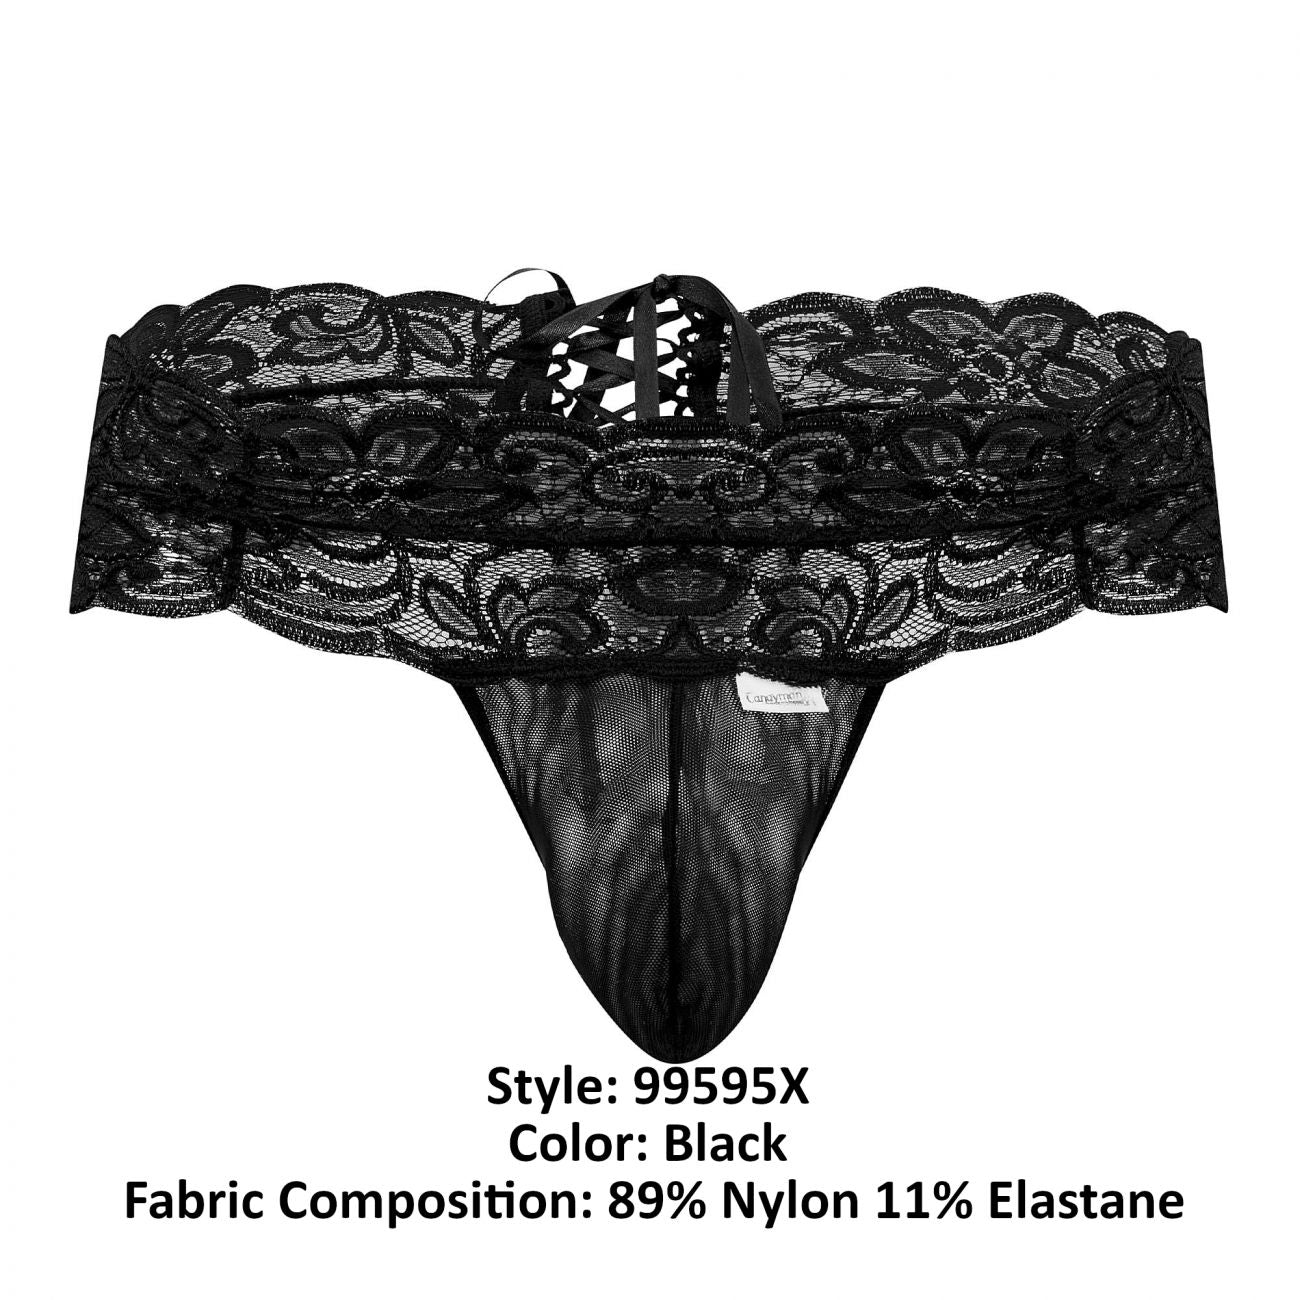 CandyMan 99595X Lace Thongs Black Plus Sizes